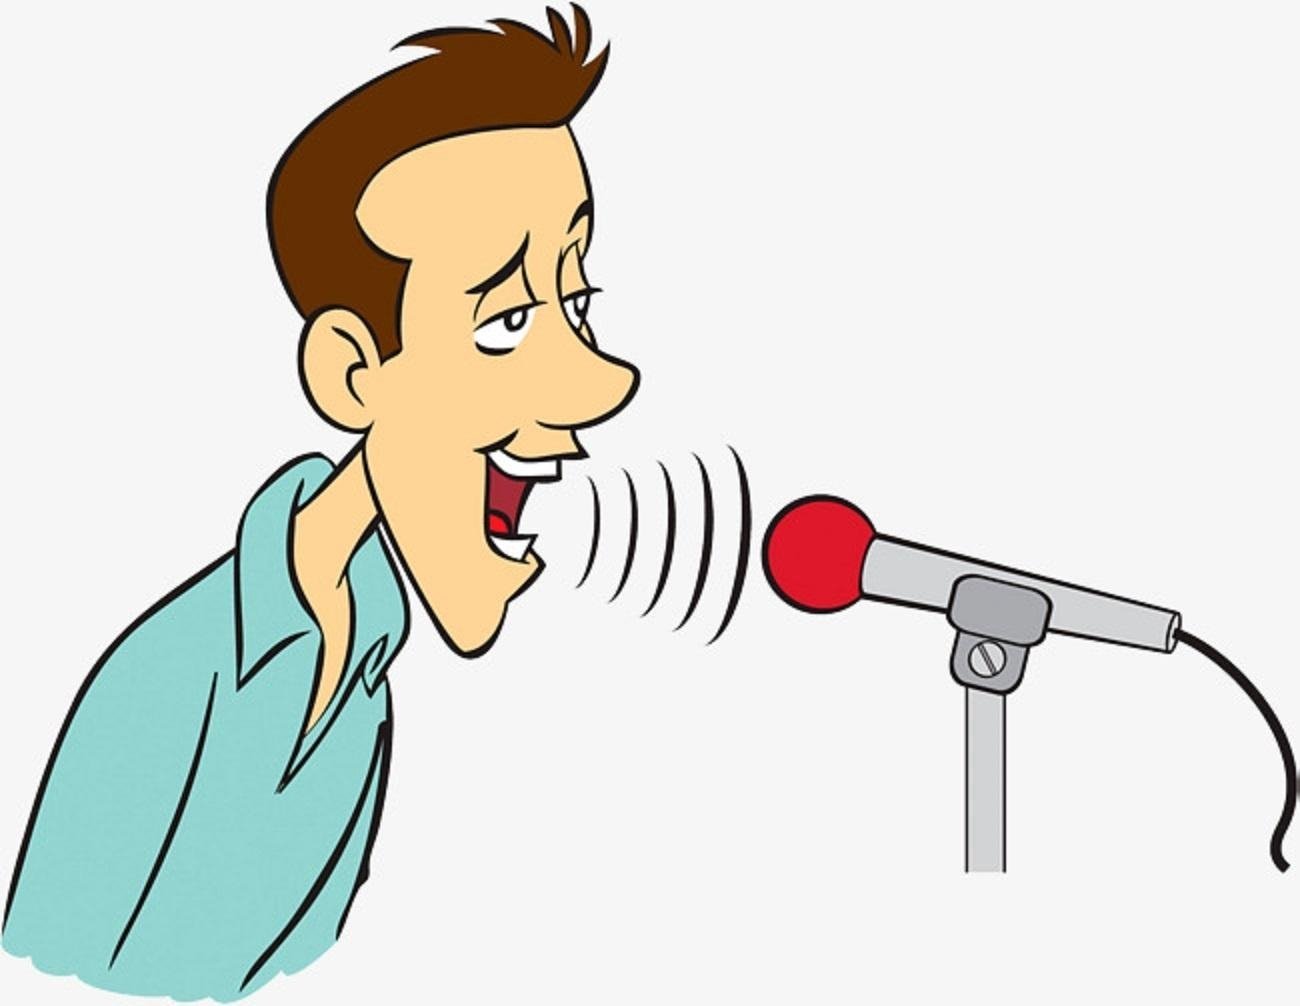 Voice colouring. Голос изображение. Микрофон нарисованный. Человек с микрофоном. Певец с микрофоном.